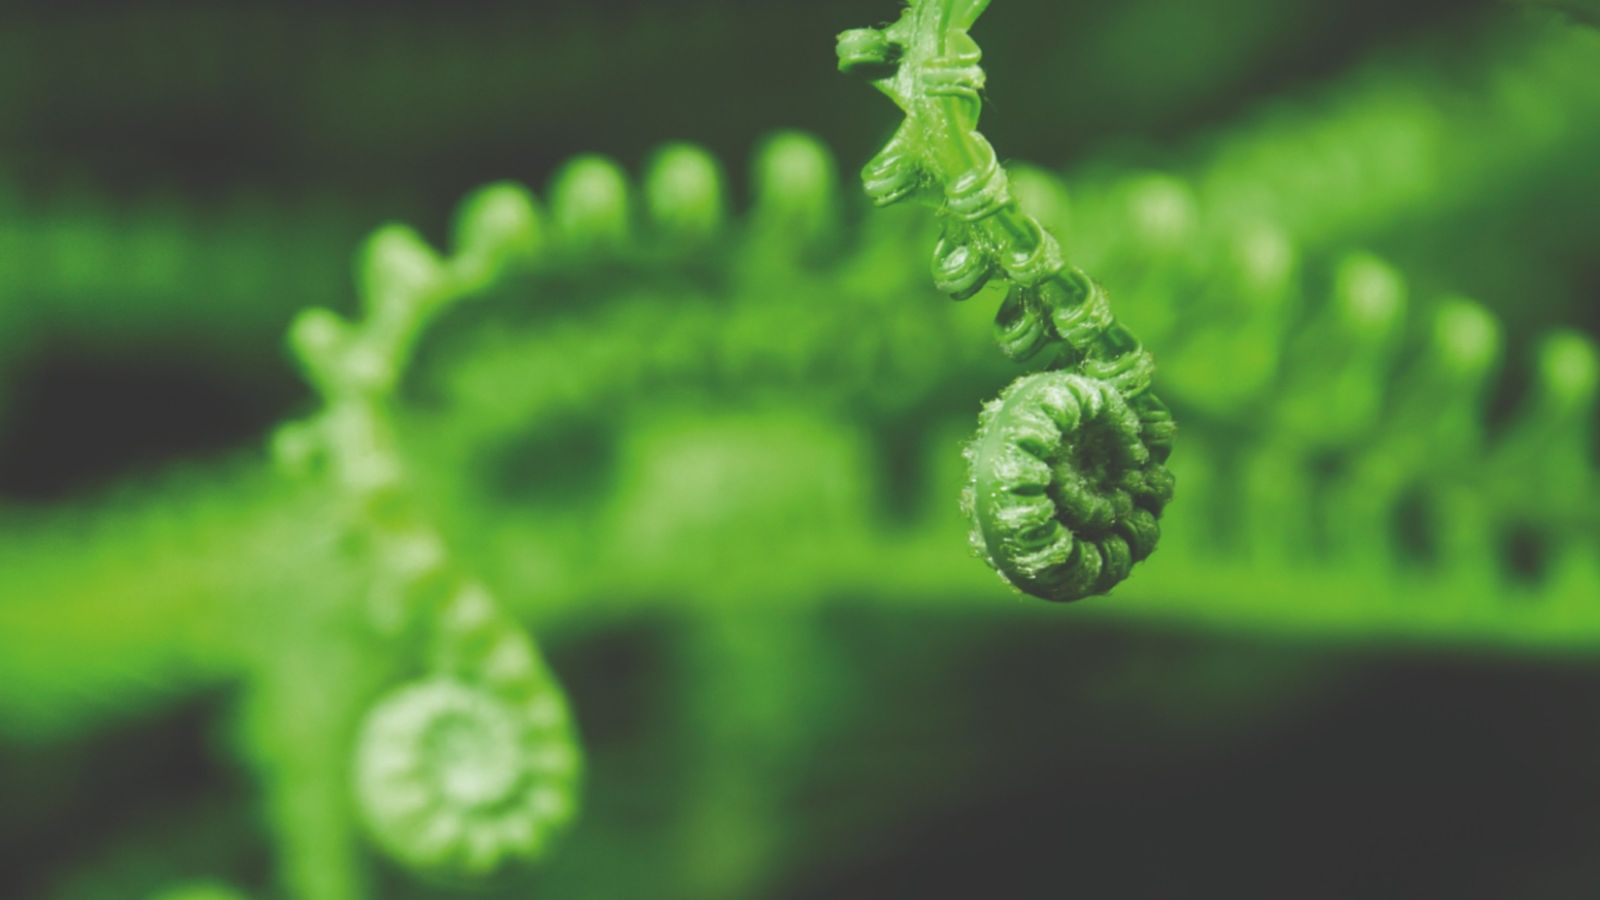 Two koru (tree fern) fronds unfurling against a damp green background.